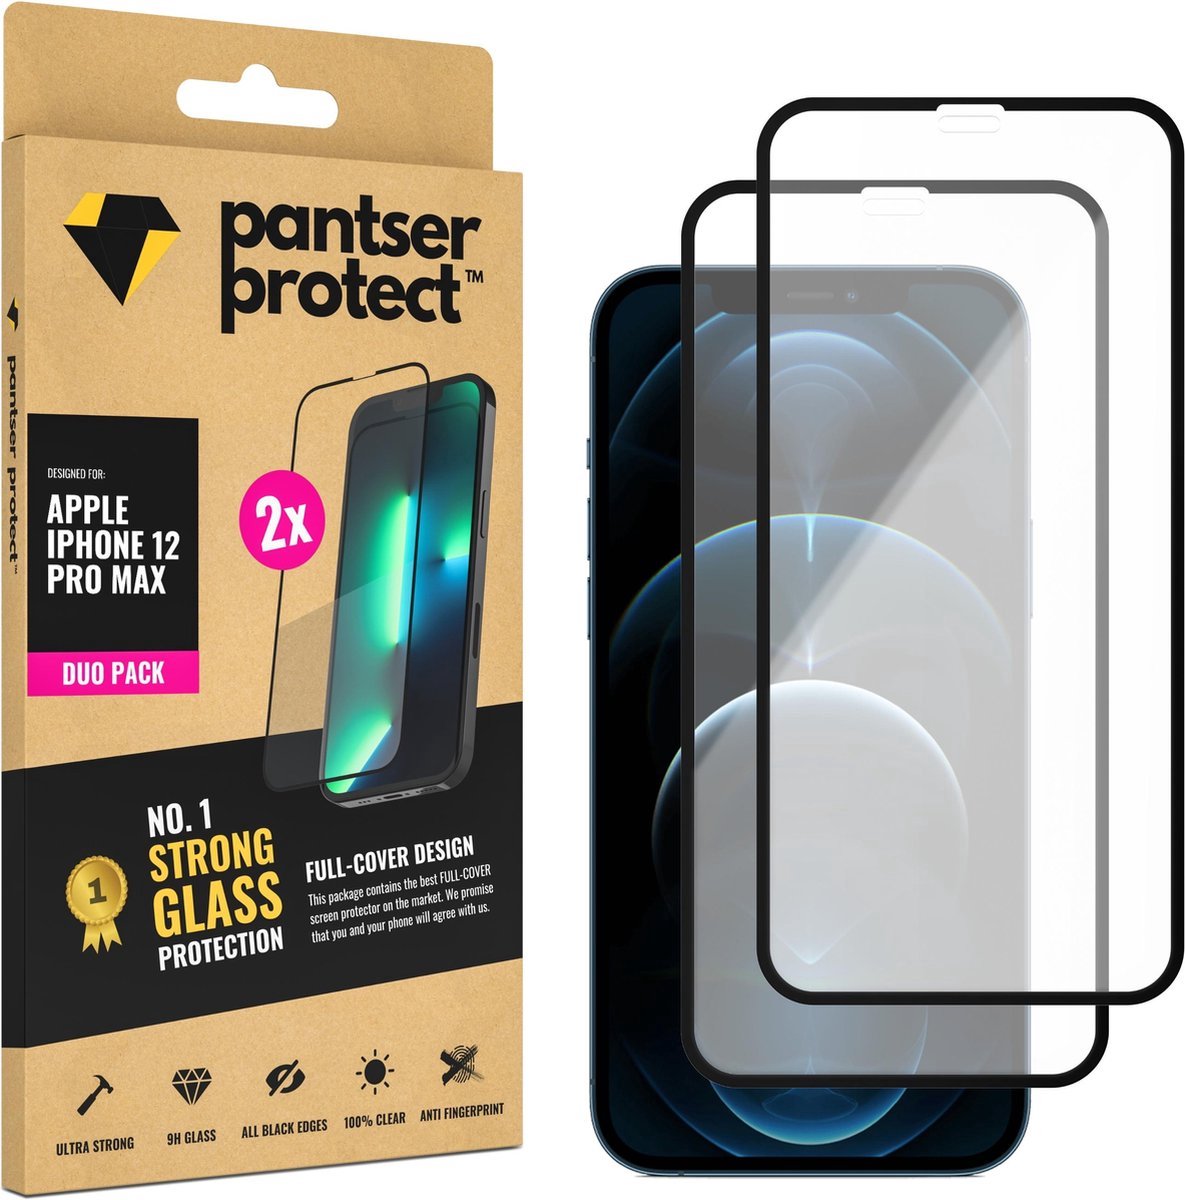 DUO-PACK - 2x Pantser Protect™ Glass Screenprotector Geschikt voor iPhone 12 Pro Max - Case Friendly - Premium Pantserglas - Glazen Screen Protector